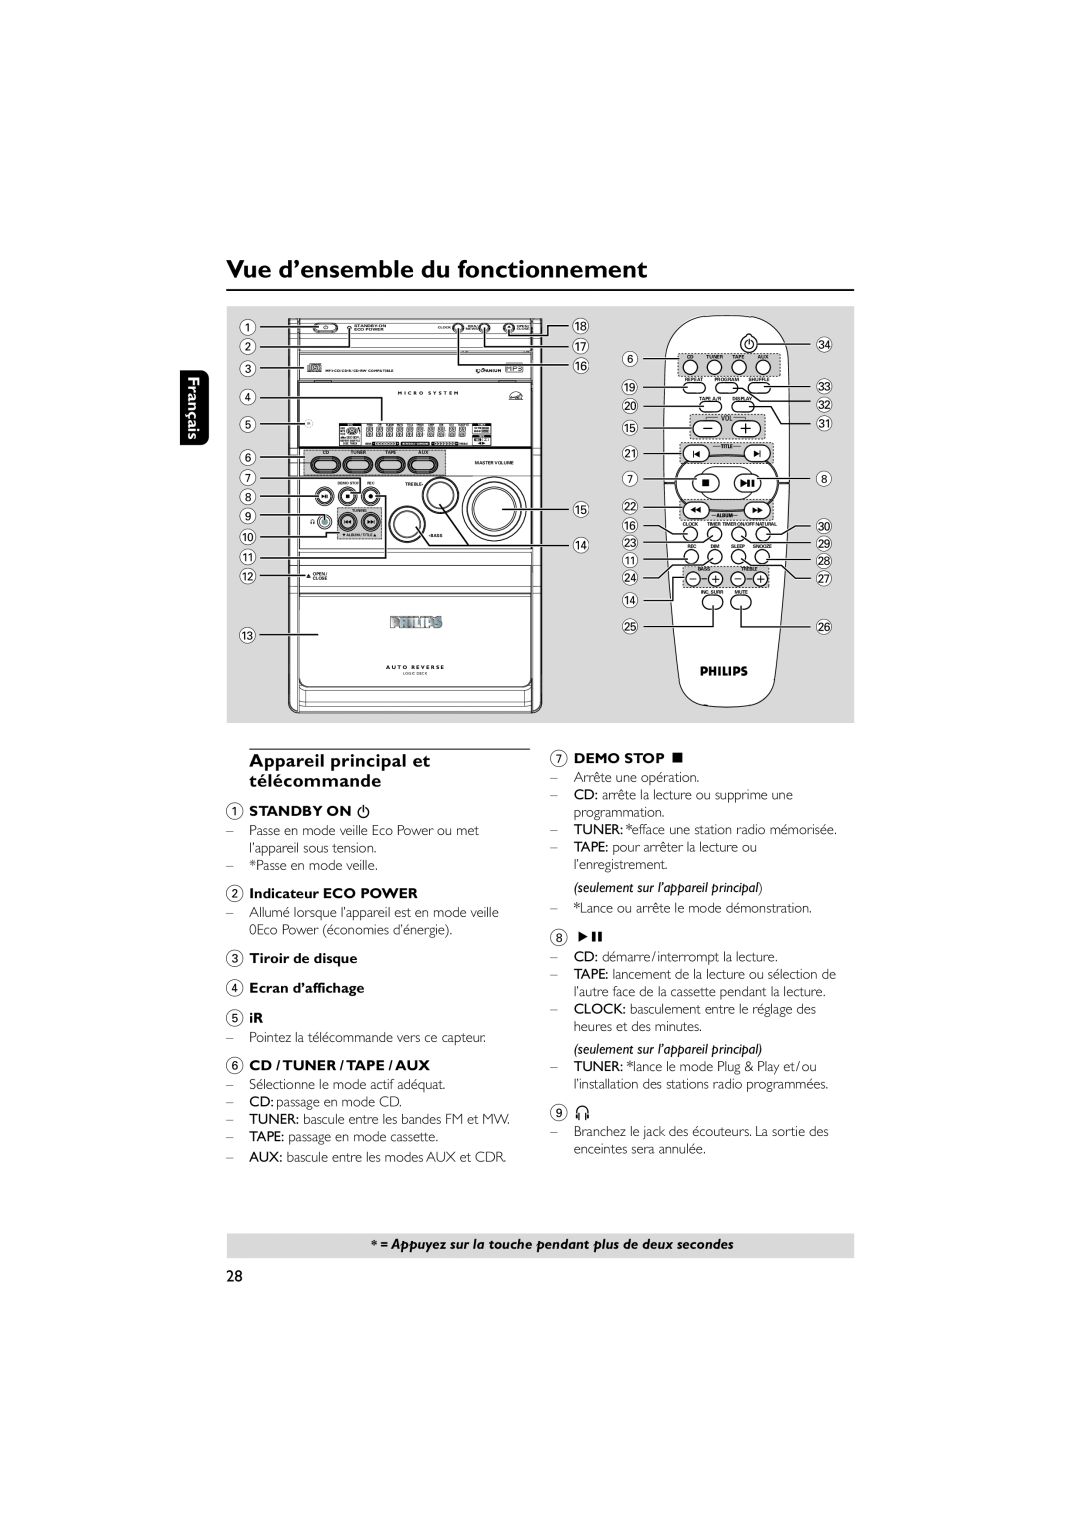 Philips MCM7, MCM8 manual Vue d’ensemble du fonctionnement, Appareil principal et télécommande 